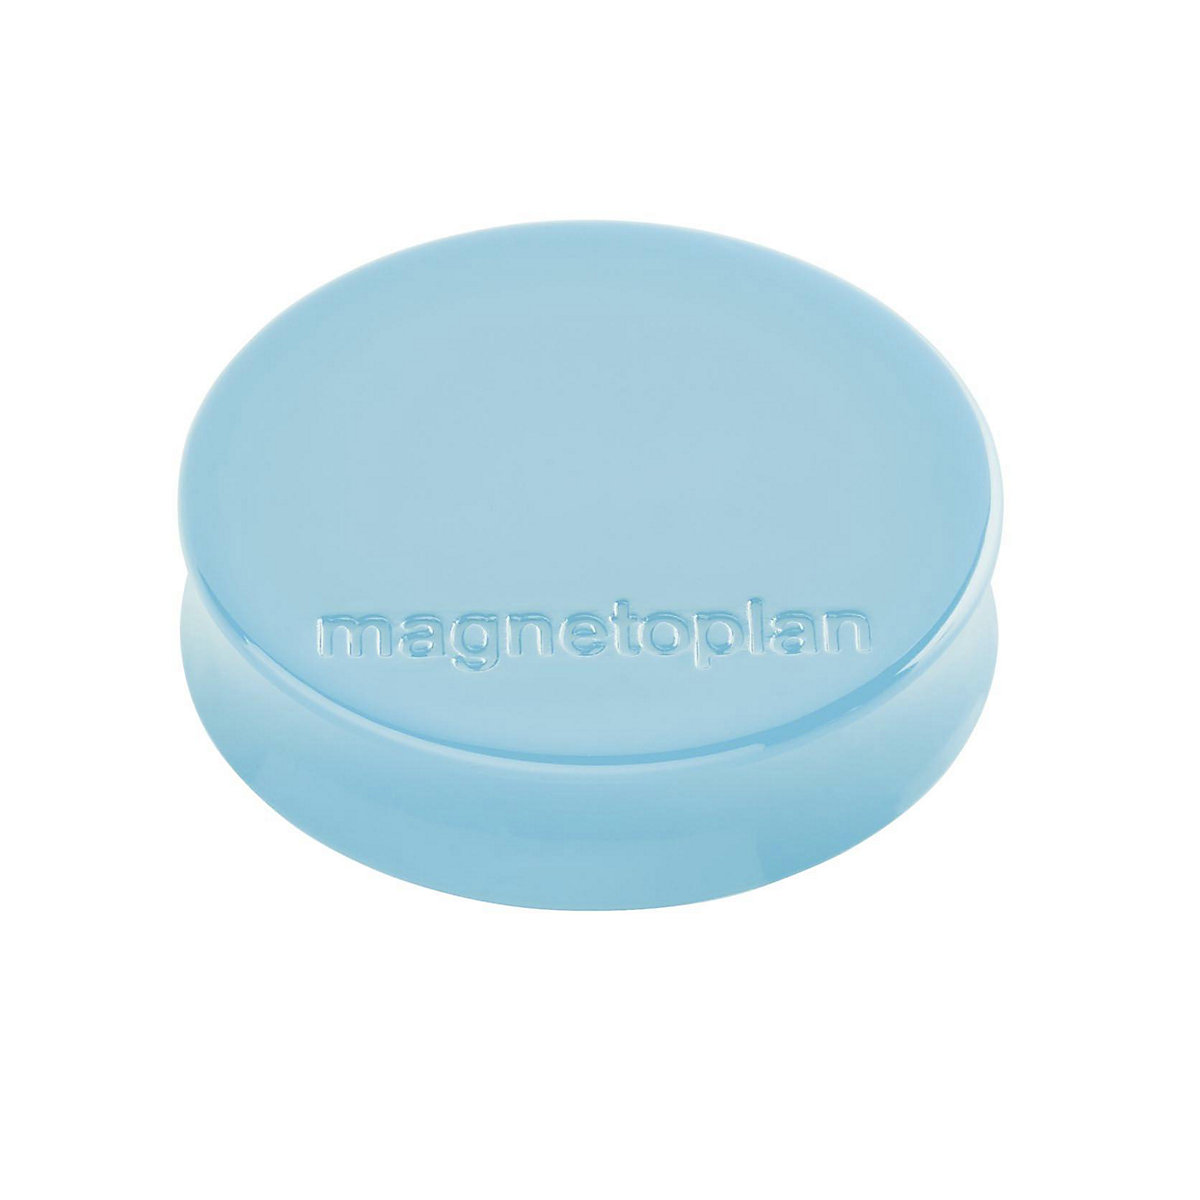 Ergo-Magnet magnetoplan, Ø 30 mm, VE 60 Stk, babyblau-5